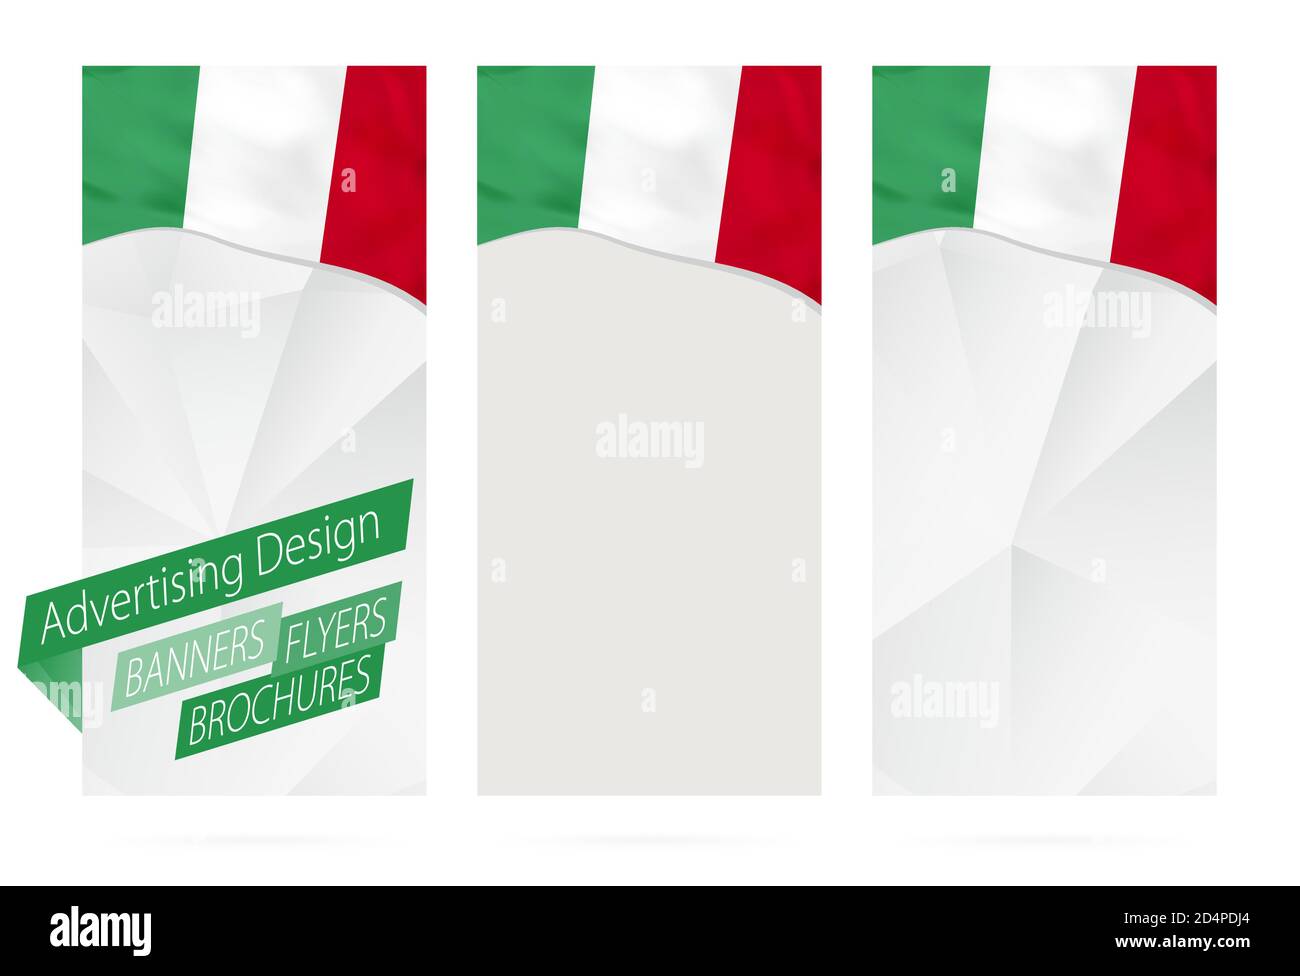 Gestaltung von Bannern, Flyern, Broschüren mit Flagge Italiens. Broschüre Vorlage für Website oder Druck. Vektorgrafik. Stock Vektor